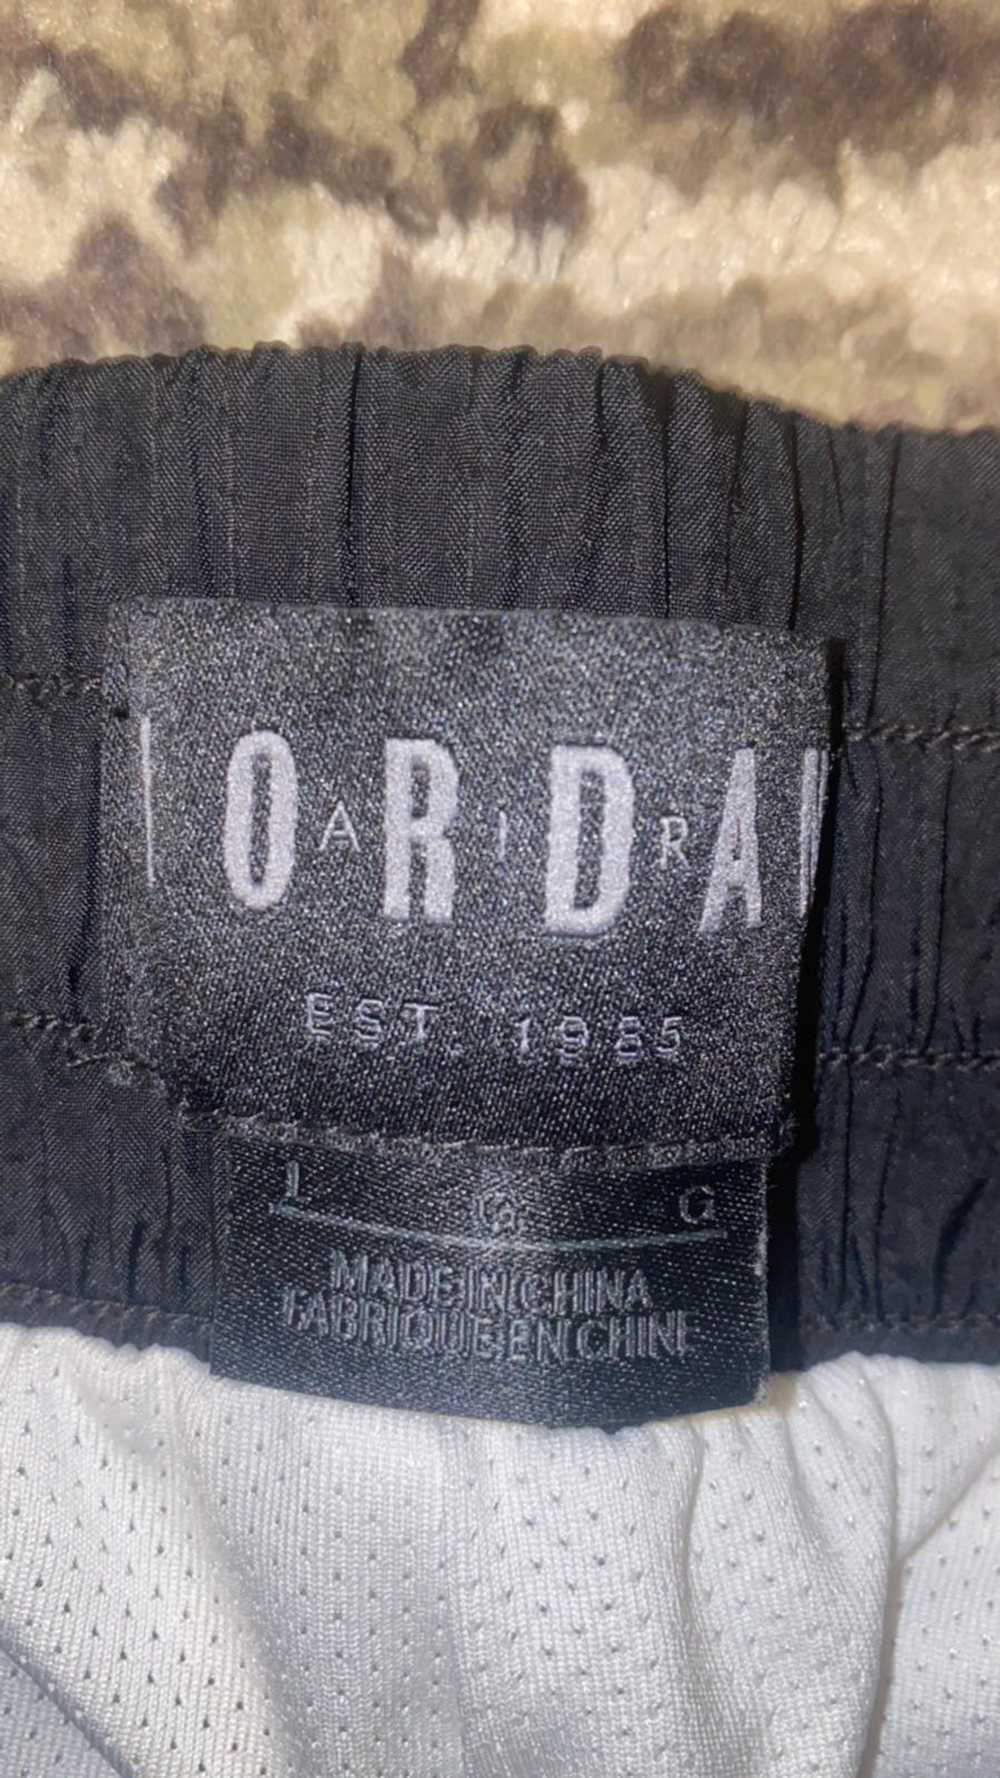 Jordan Brand Jordan tracksuit pants - image 2